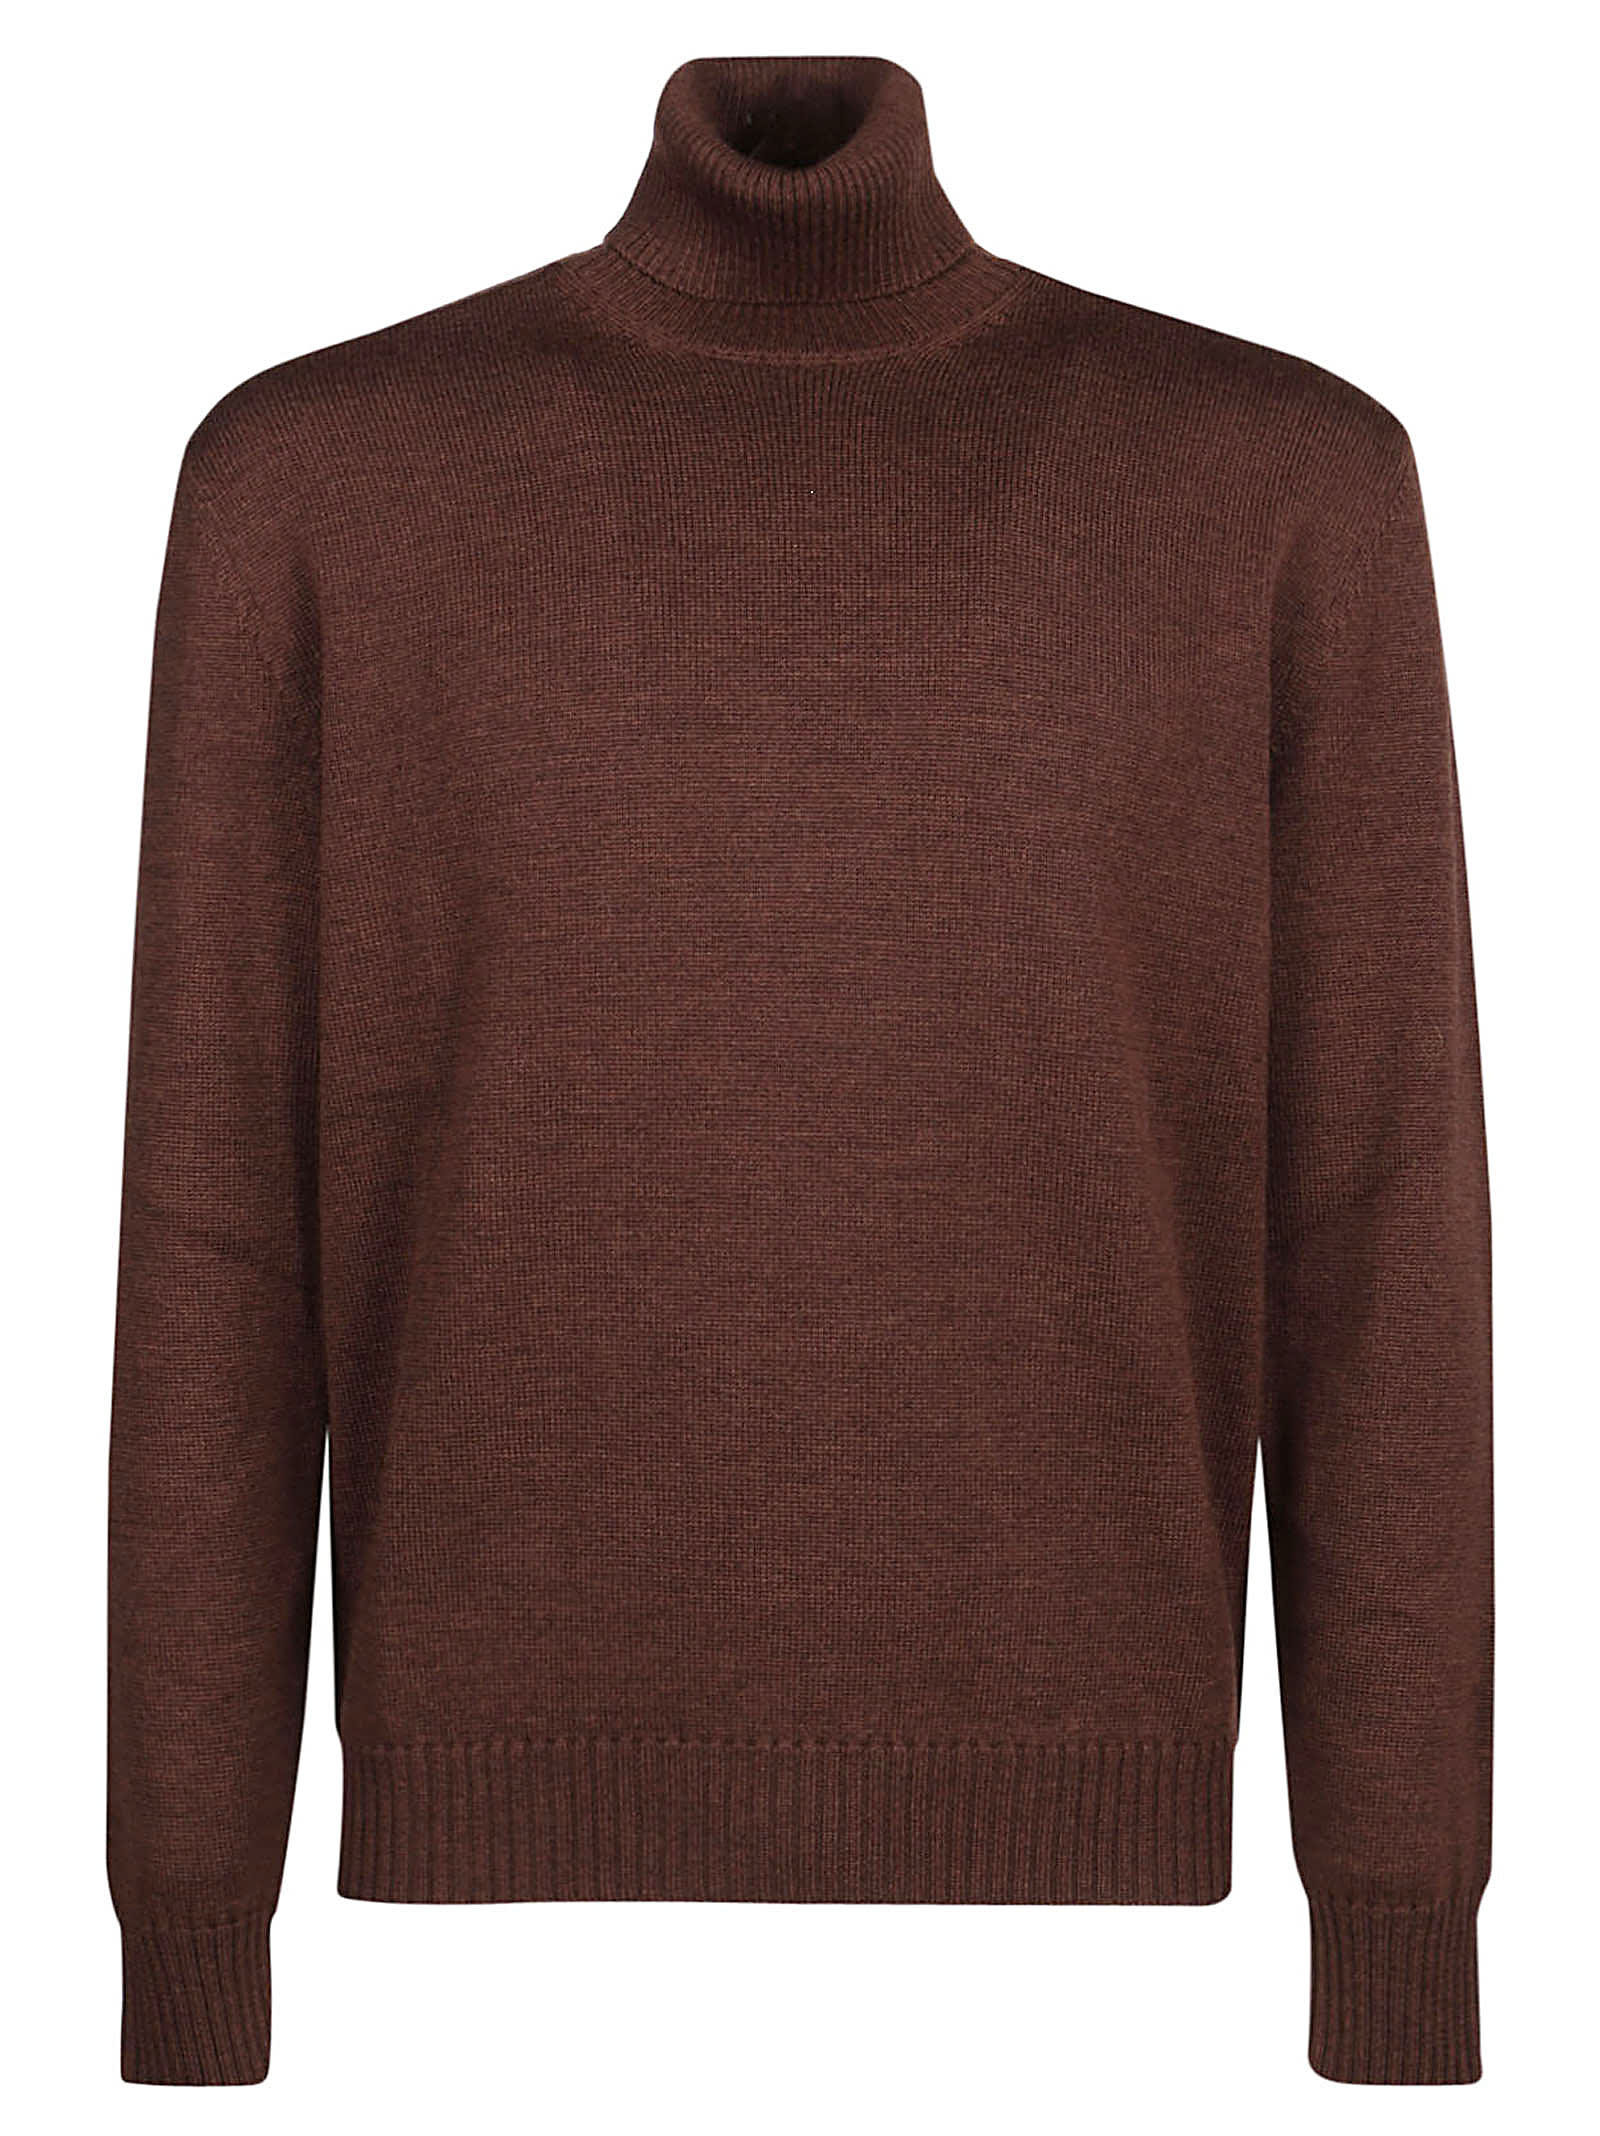 Ballantyne Plain Turtleneck Sweater